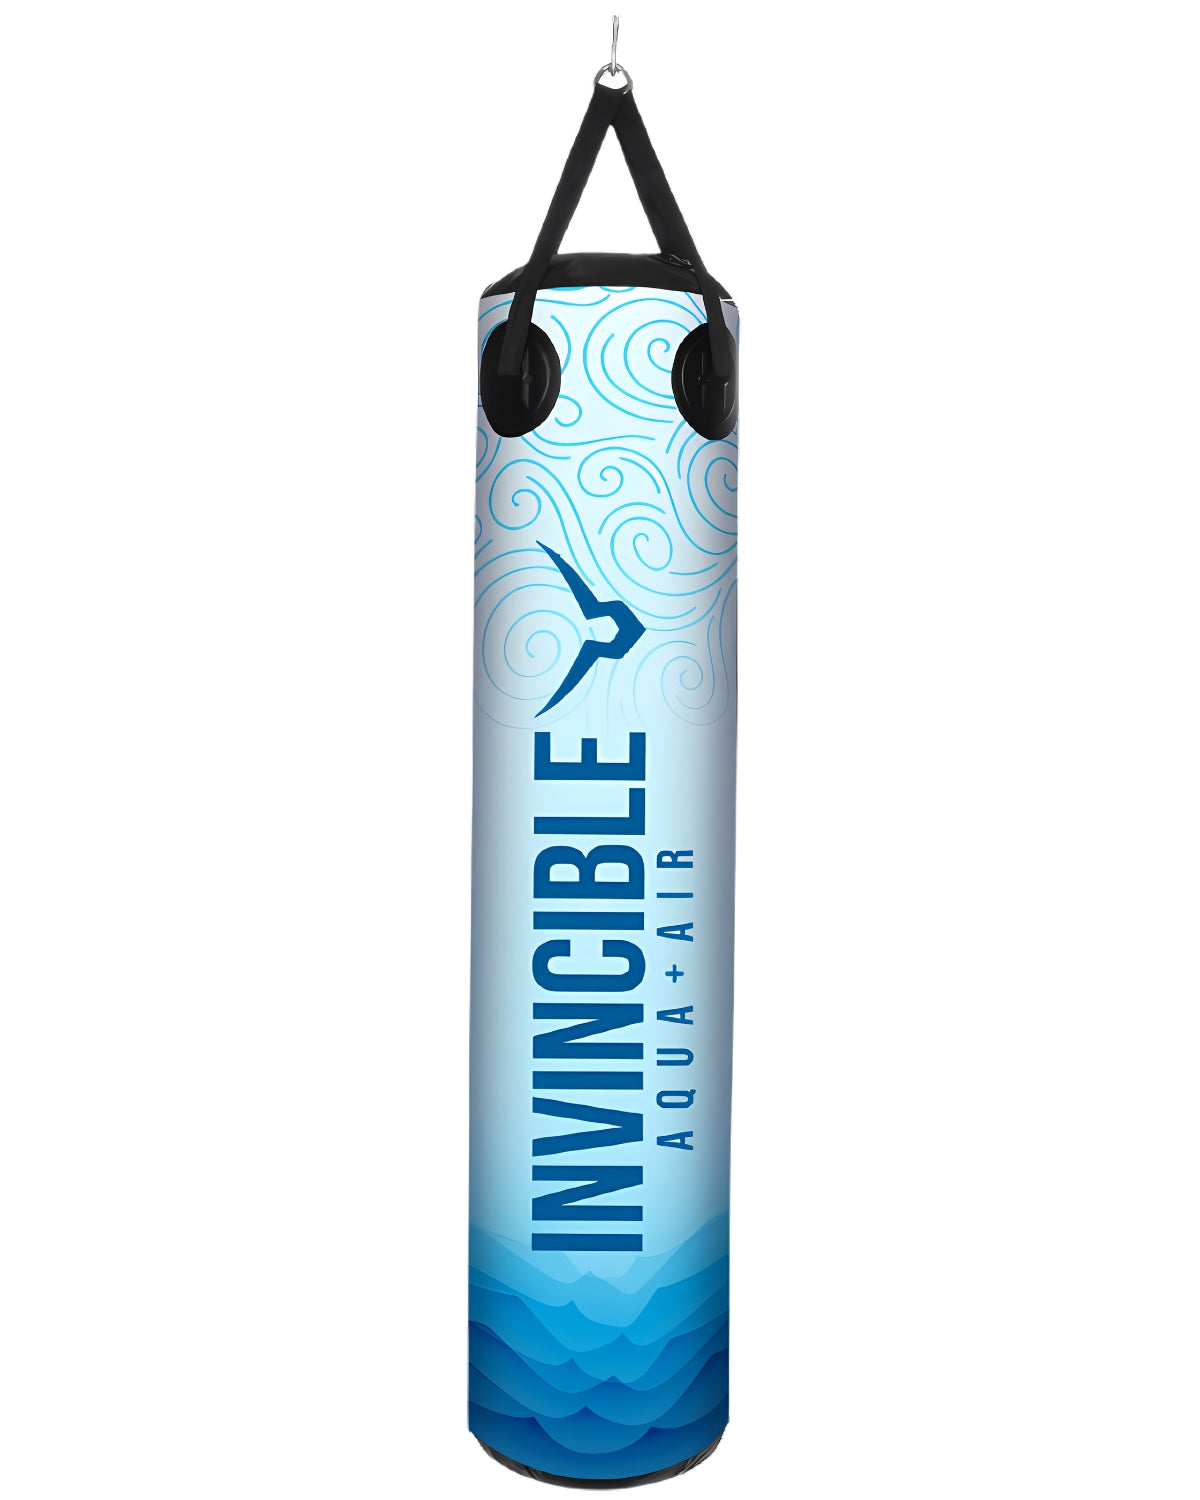 Invincible Classic Aqua Air Punching Bag